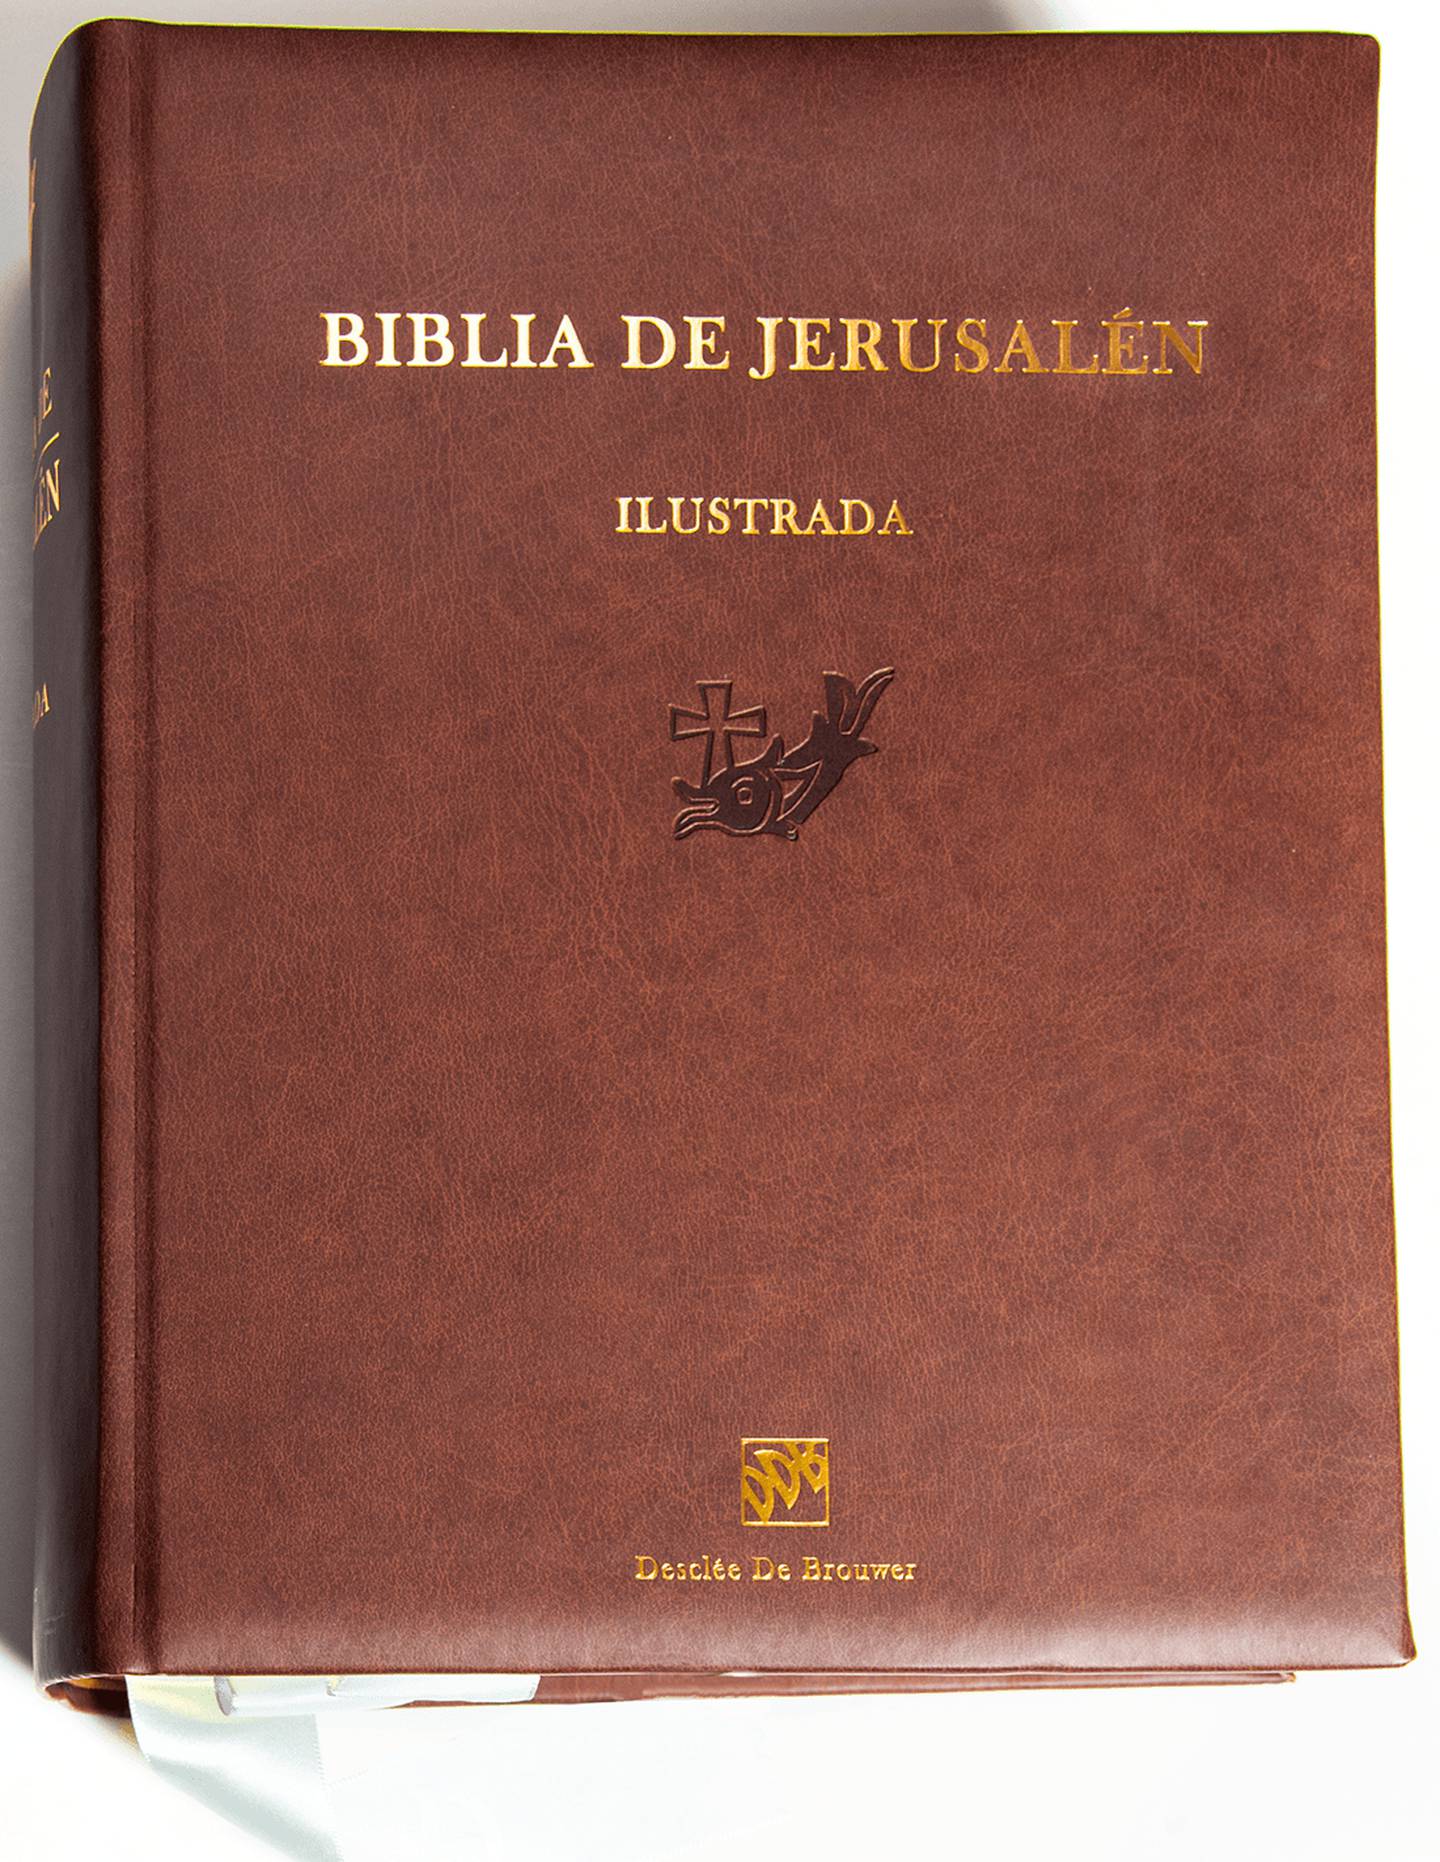 El presidente electo de Costa Rica, Rodrigo Chaves Robles, llamó el pasado miércoles a la librería Katholikós en Rhormoser para preguntar por una biblia Jerusalén